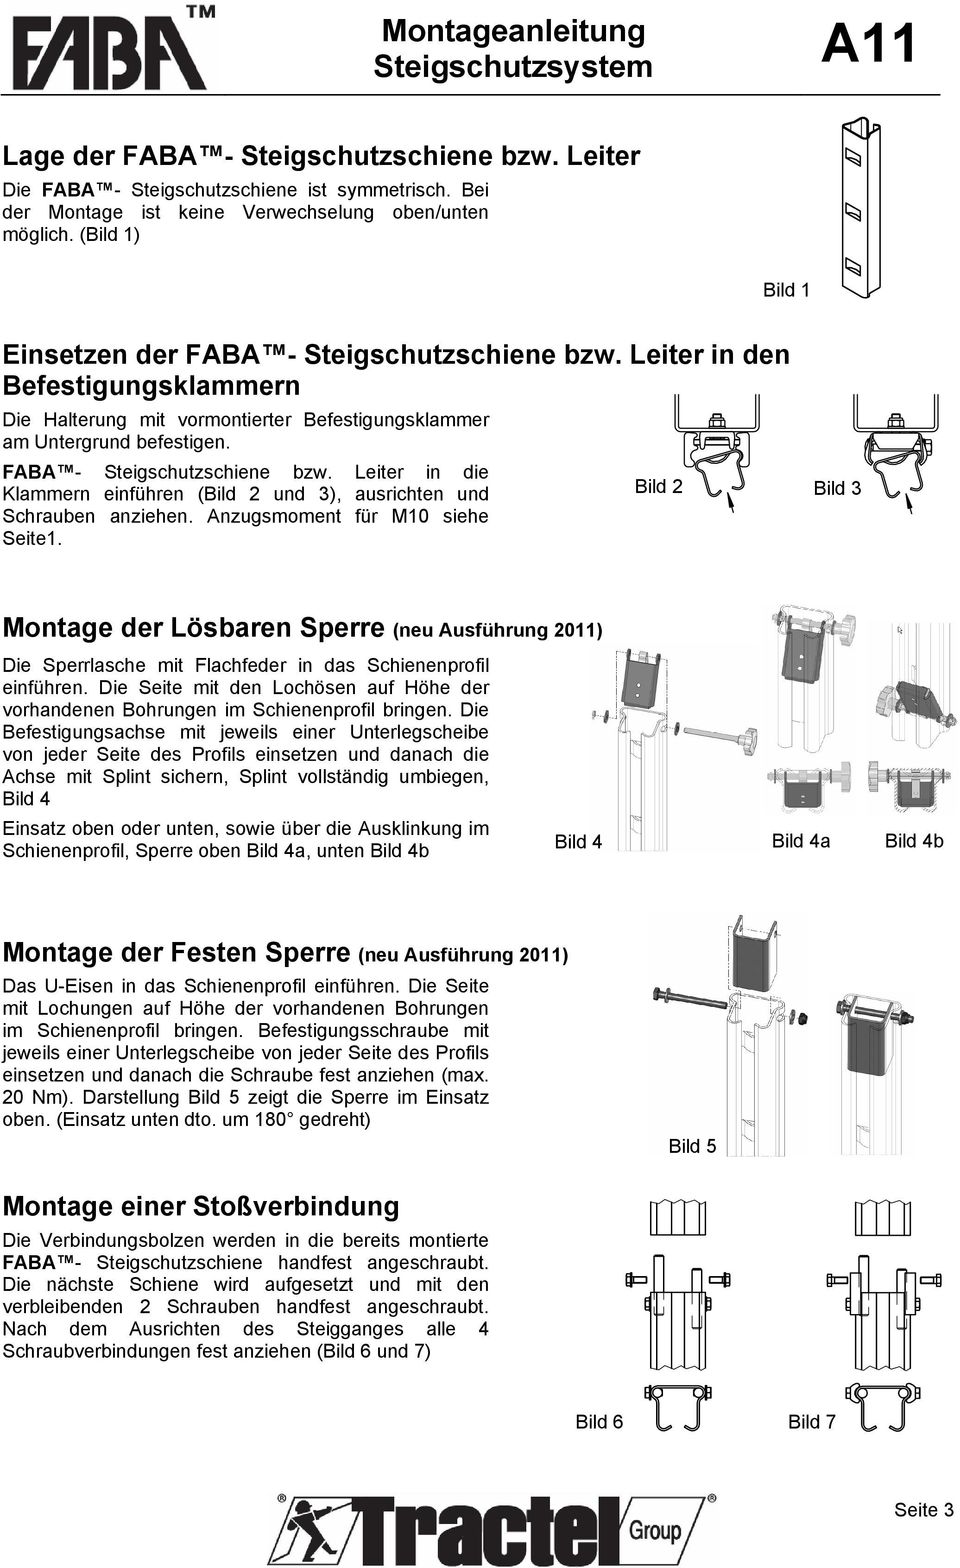 FABA - Steigschutzschiene bzw. Leiter in die Klammern einführen (Bild 2 und 3), ausrichten und Schrauben anziehen. Anzugsmoment für M10 siehe Seite1.